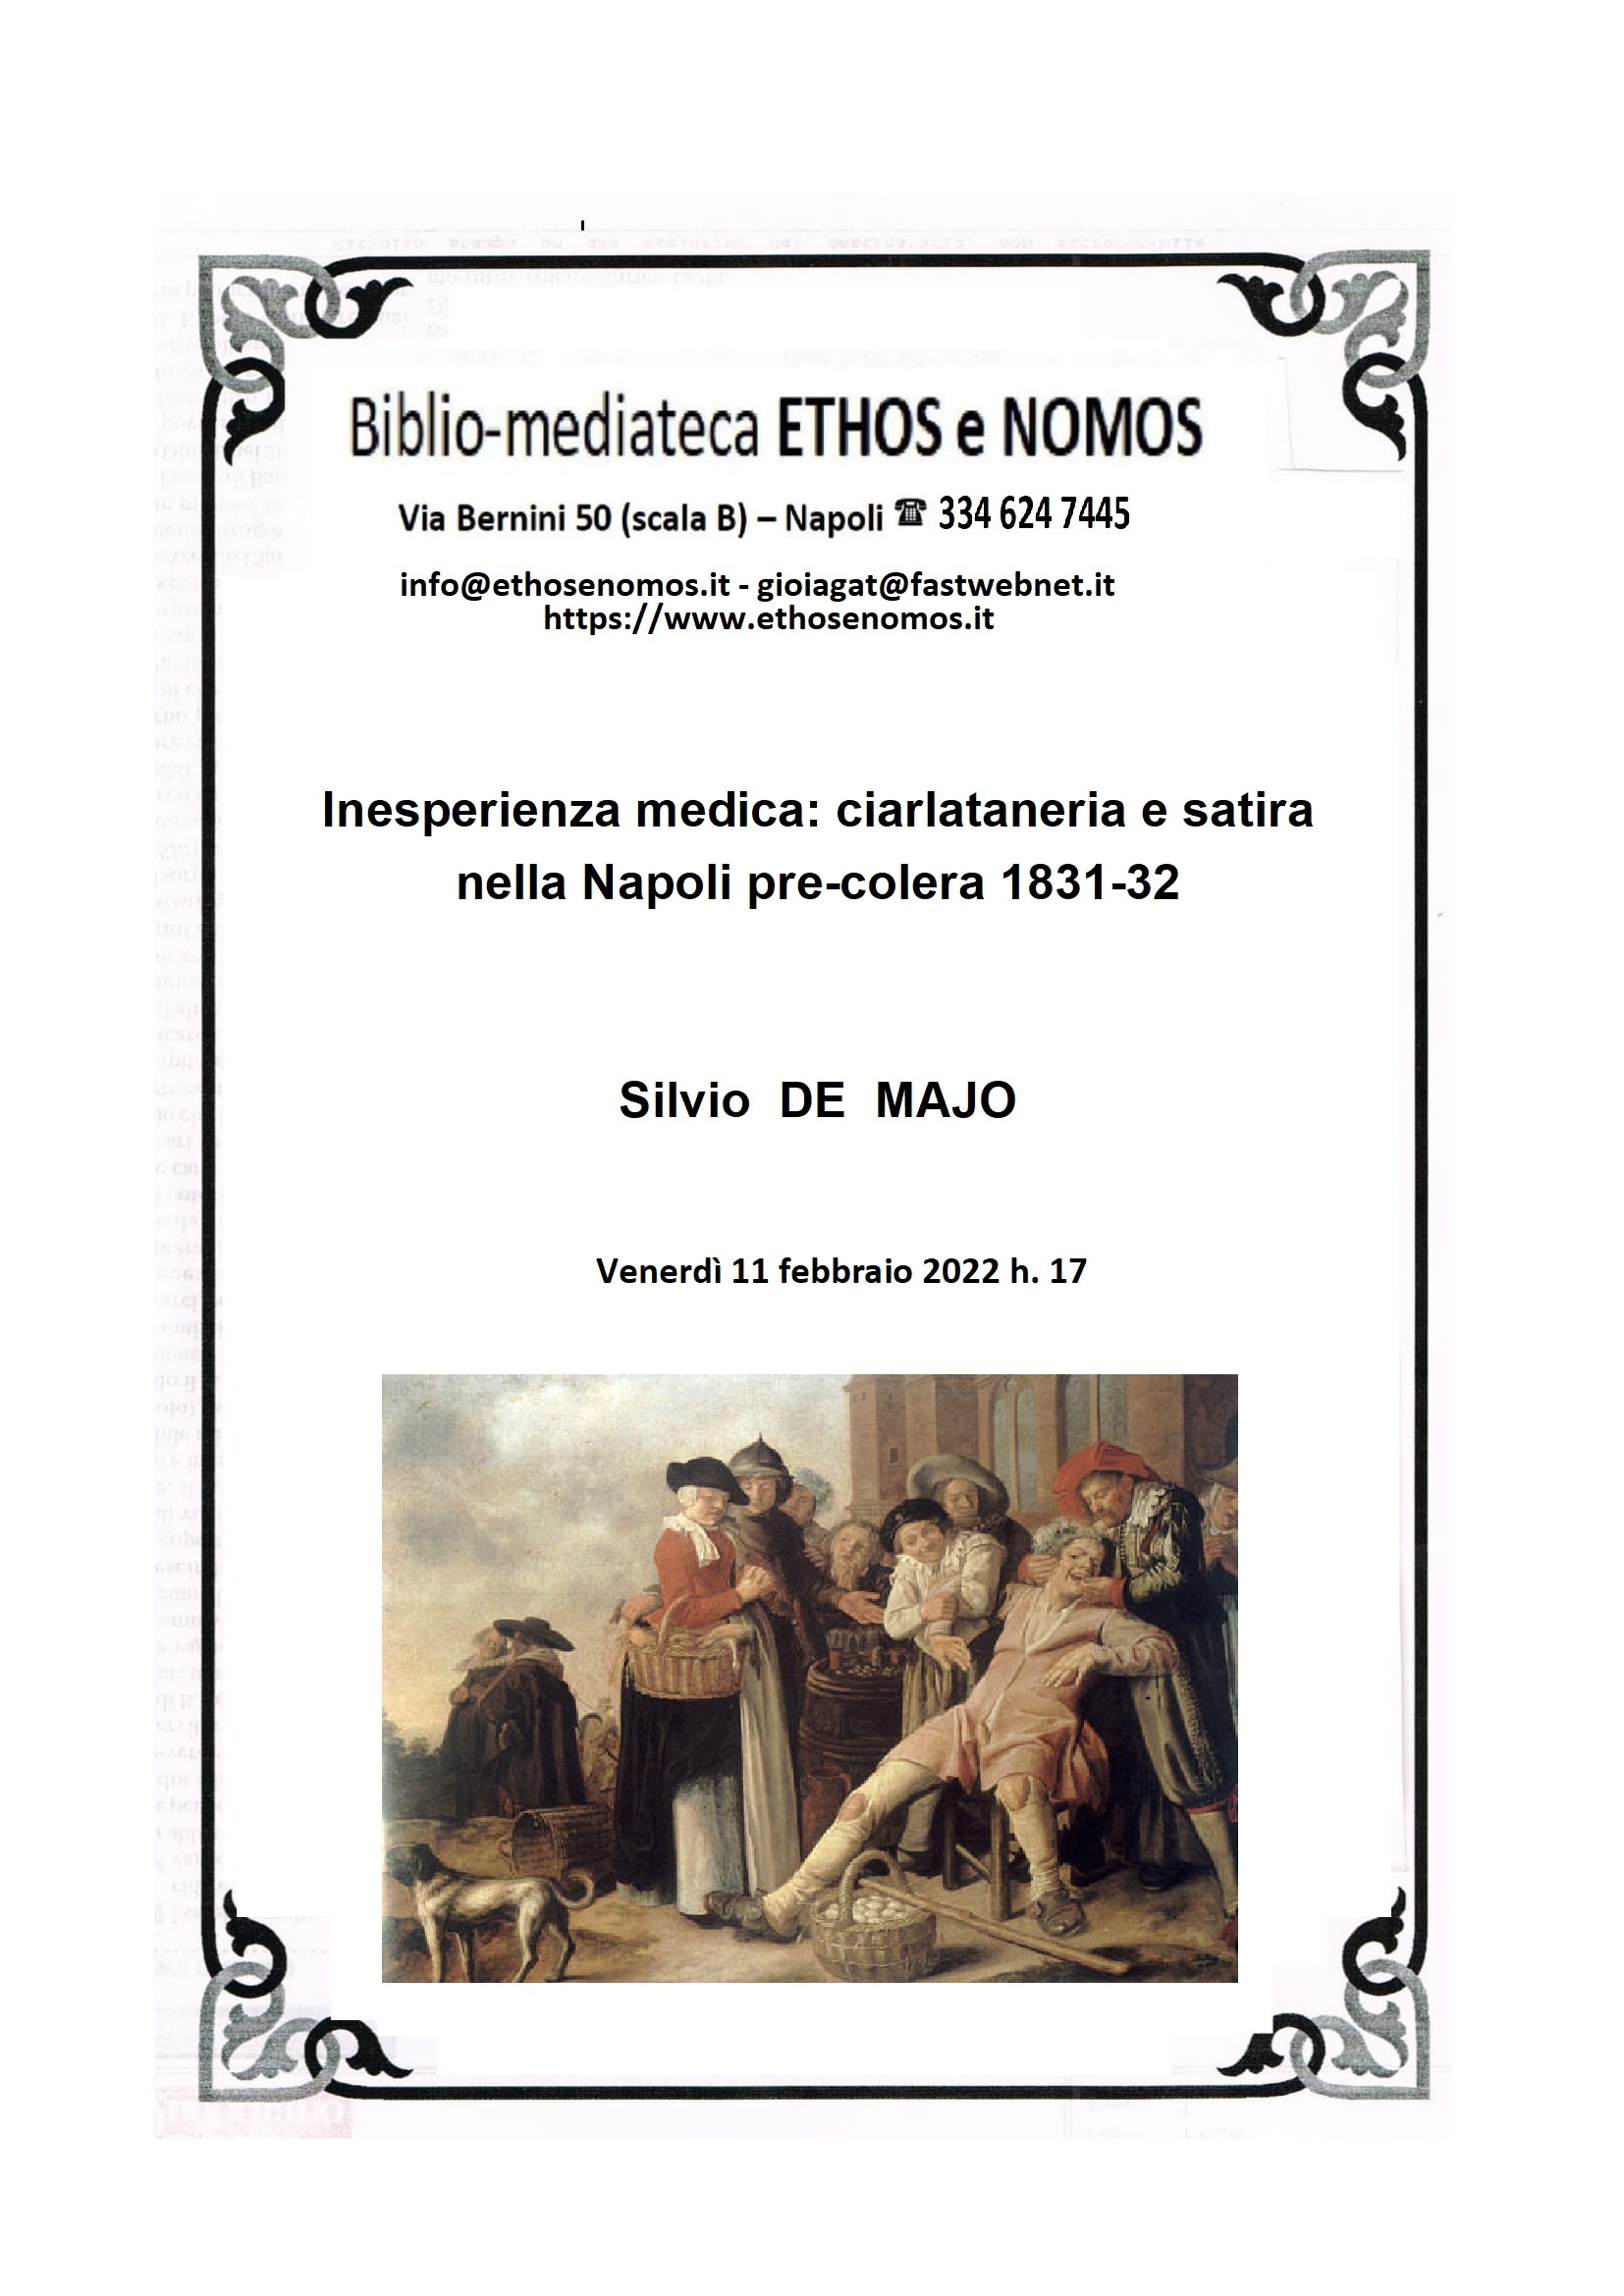 SILVIO DE MAJO - Inesperienza medica: ciarlataneria e satira nella Napoli pre-colera